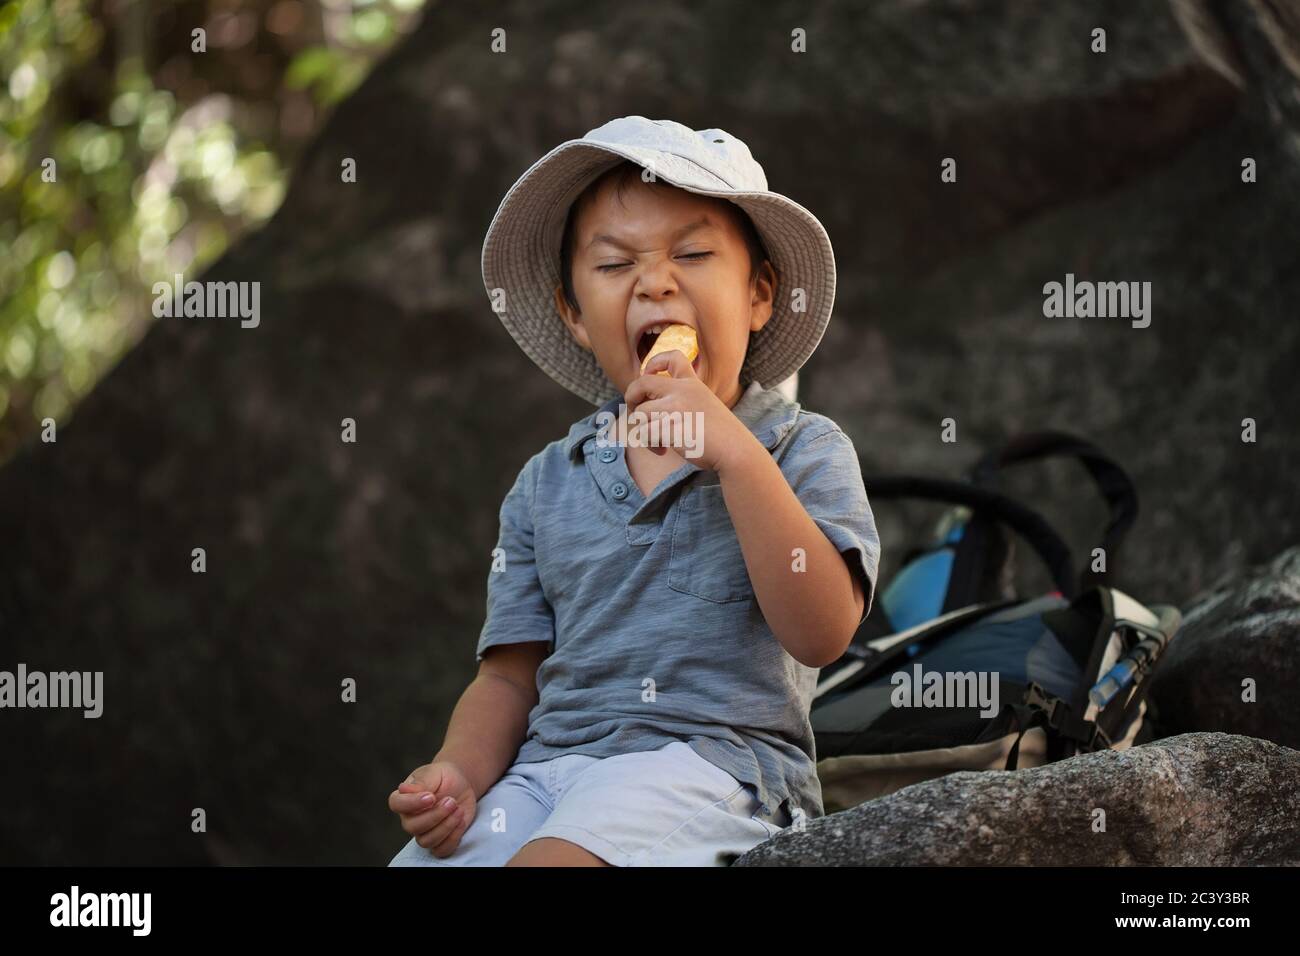 Comiendo bocadillos saludables, un niño pequeño está tomando una mordedura de una manzana mientras descansa durante una caminata. Foto de stock